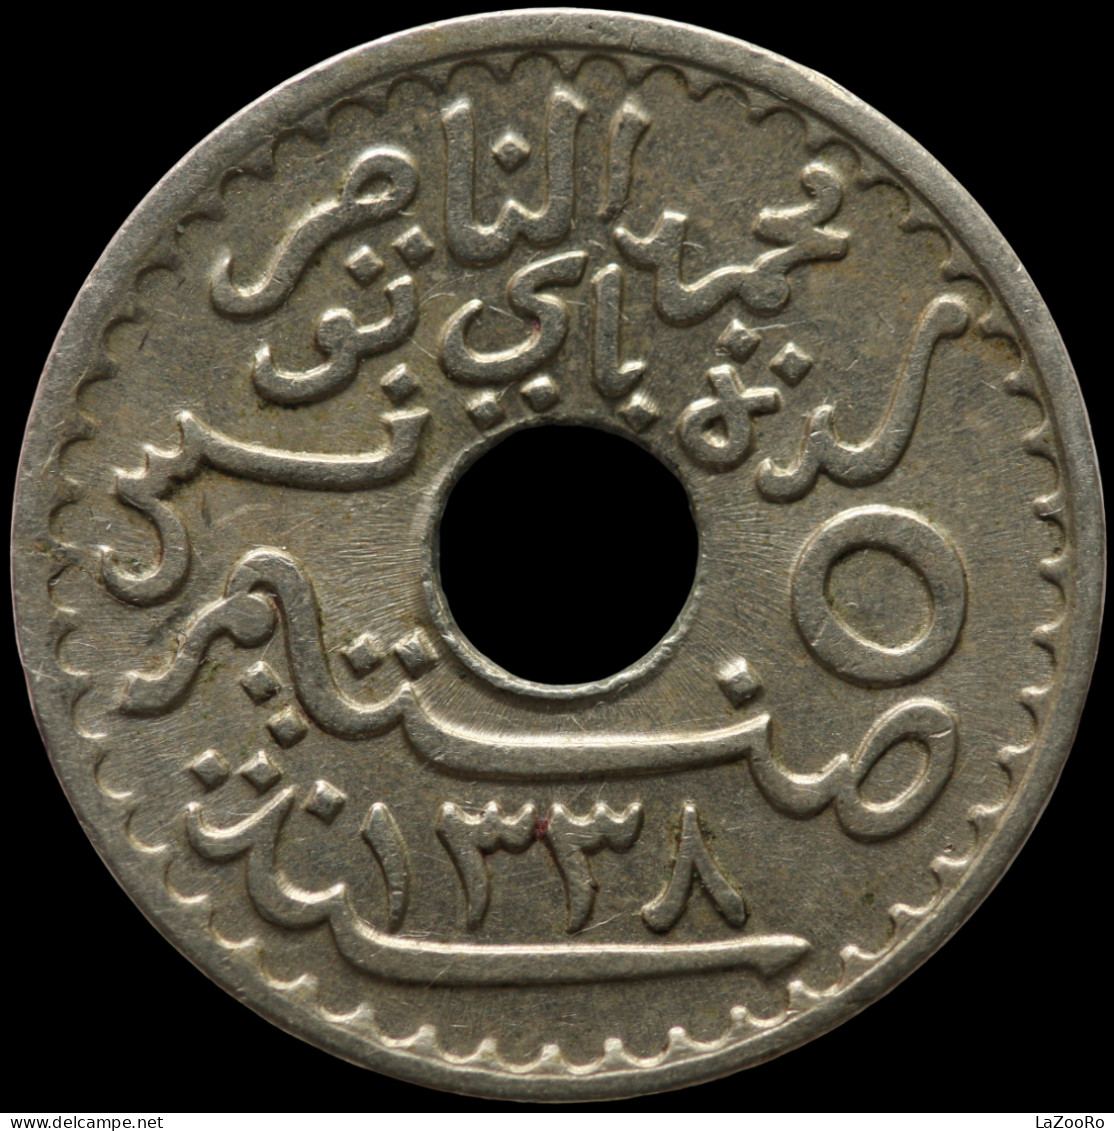 LaZooRo: Tunisia 5 Centimes 1920 UNC - Tunisia